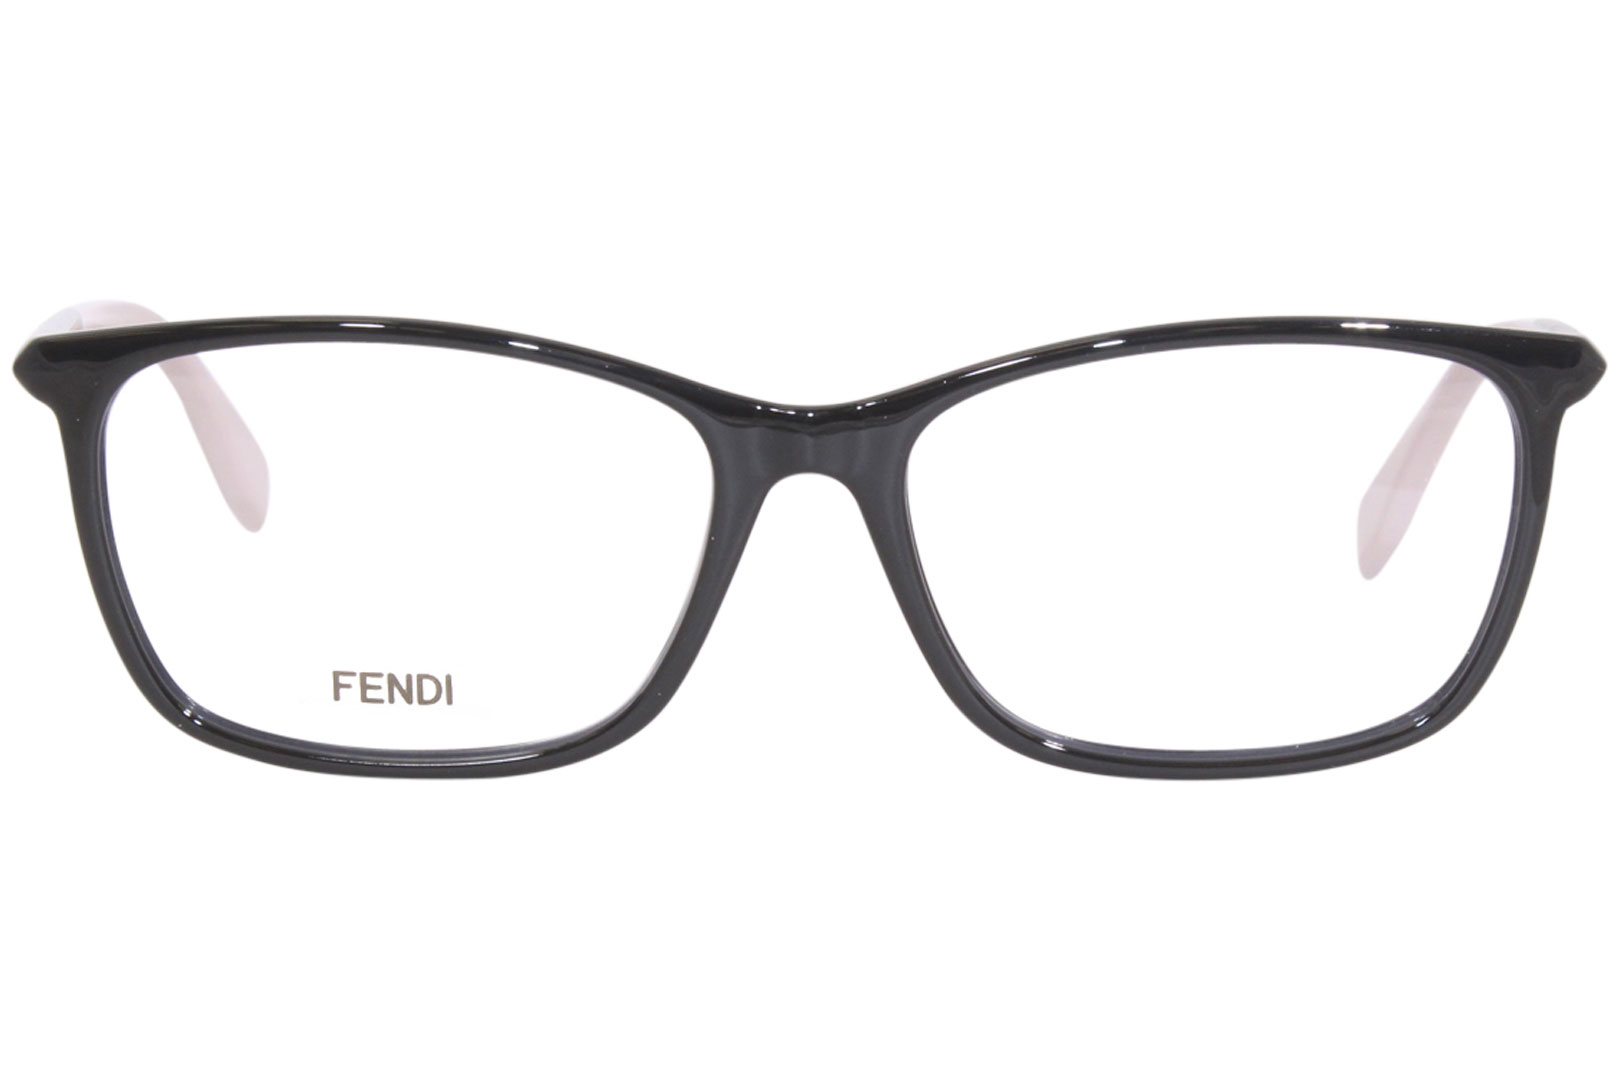 Fendi Ff0448 807 Eyeglasses Womens Black Full Rim Rectangle Shape 55 16 145